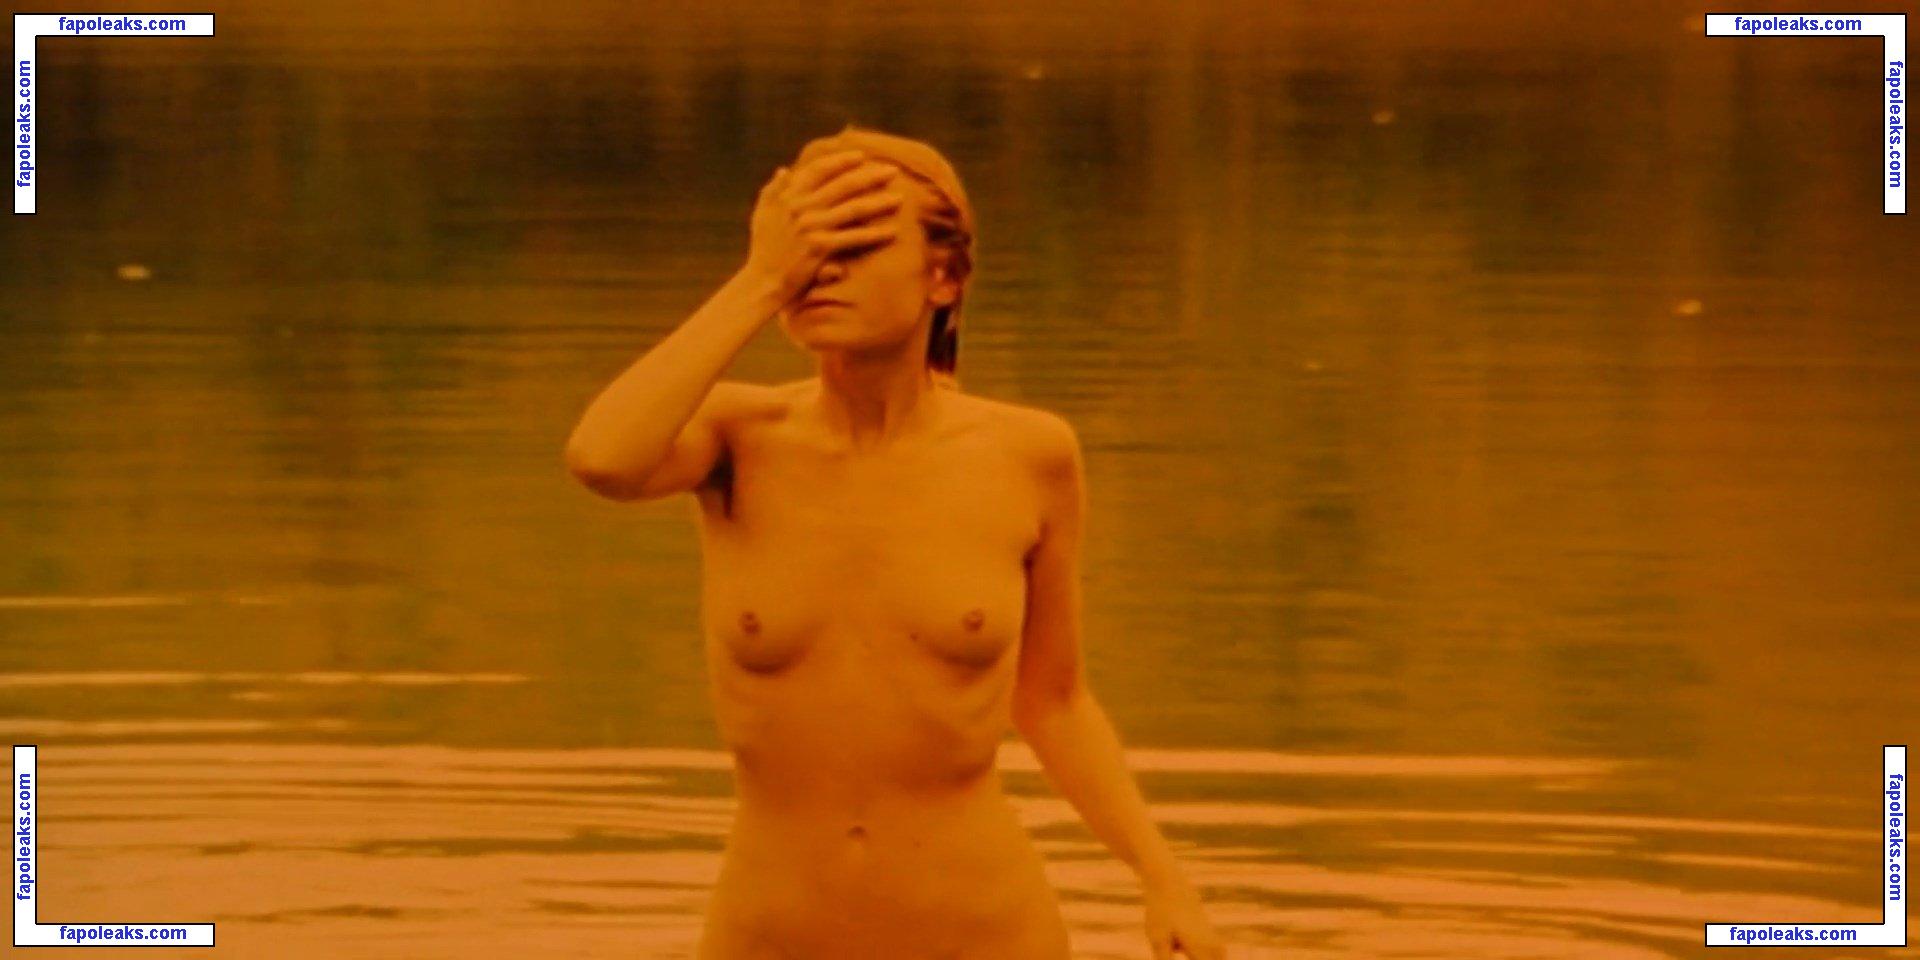 Hanne Klintoe nude photo #0014 from OnlyFans